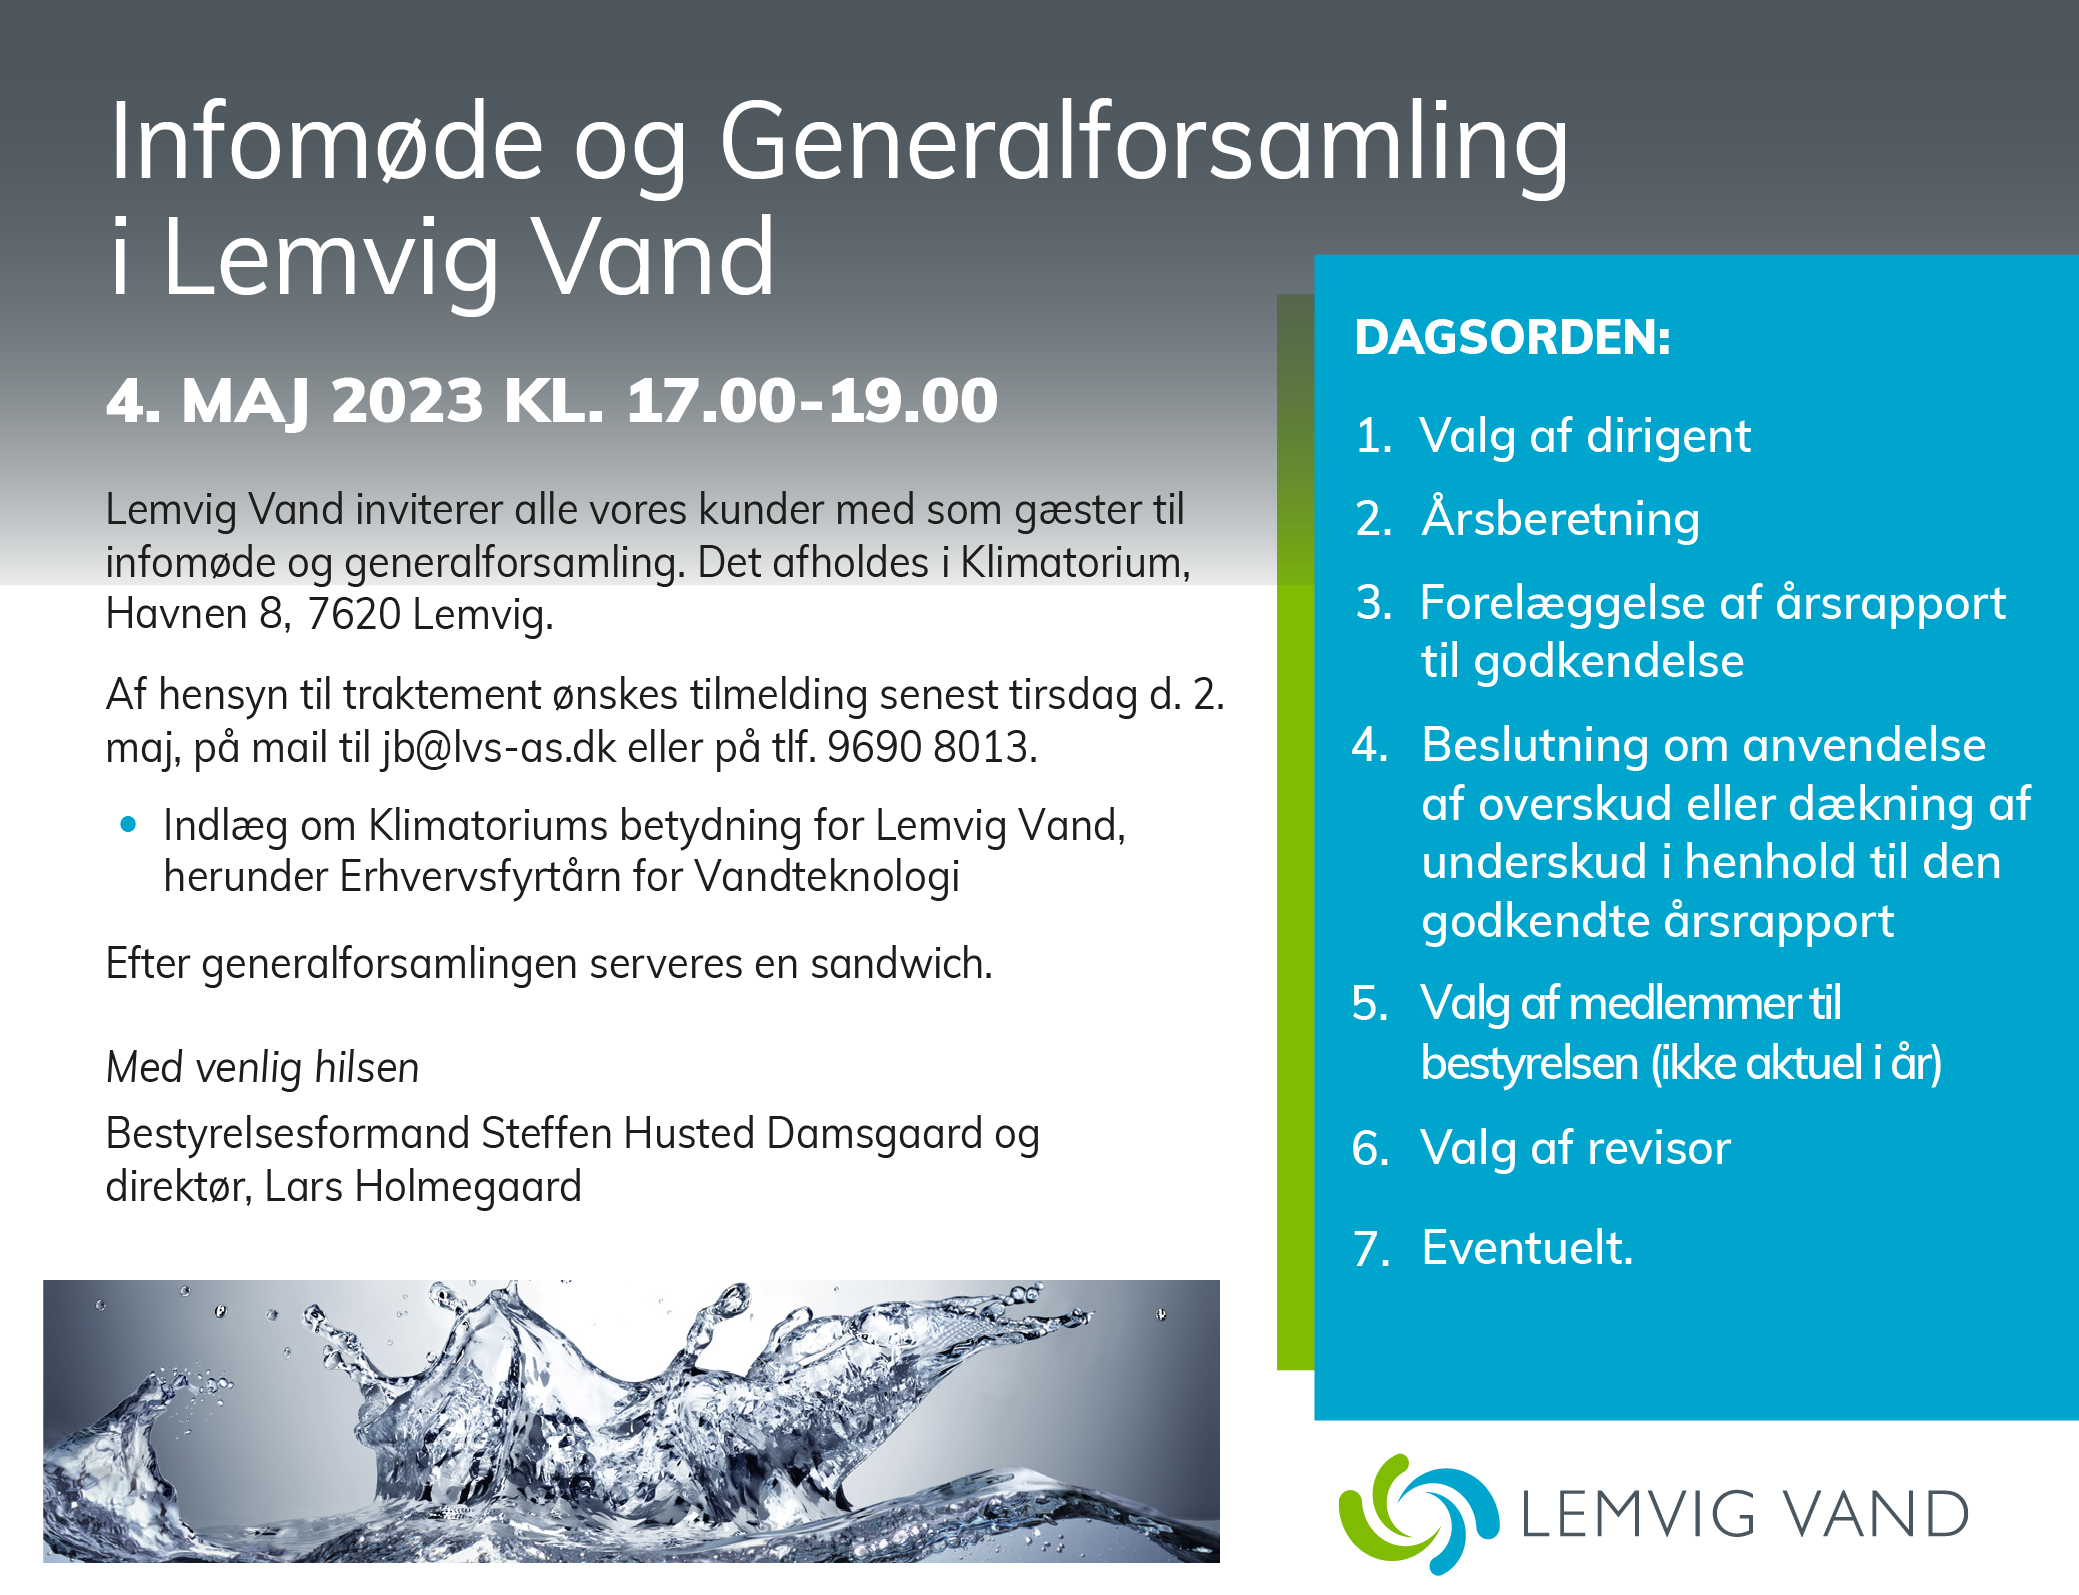 Lemvig Vand generalforsamling annonce  2023 - færdig version2-01.png